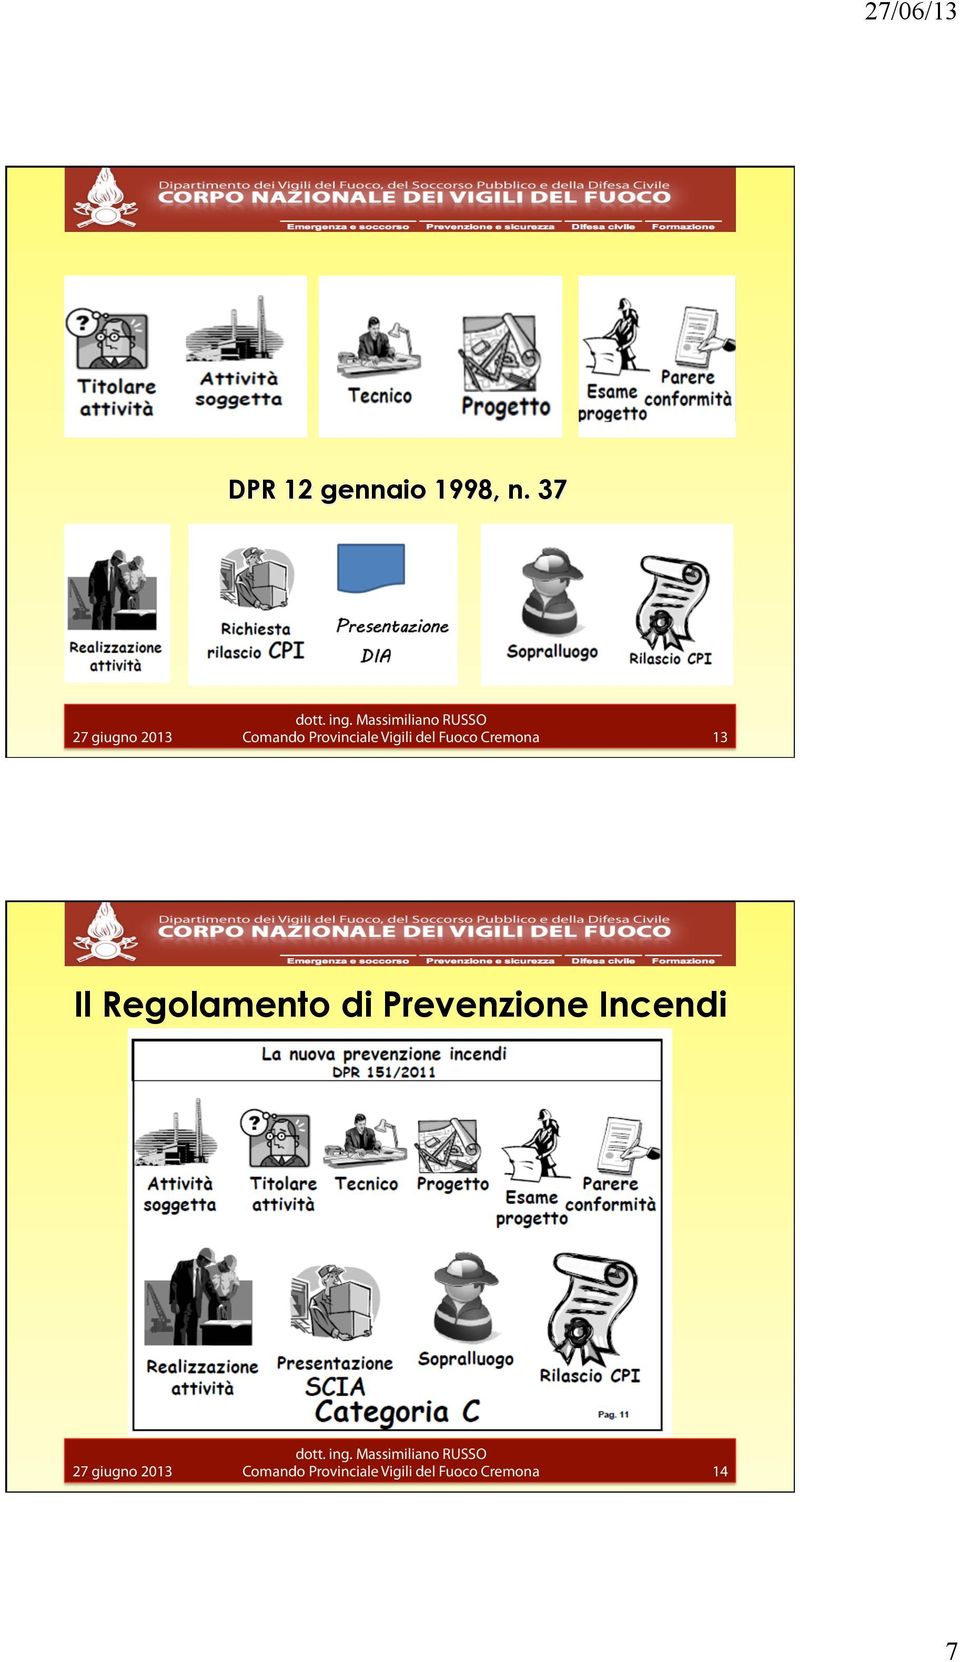 Fuoco Cremona 13 Il Regolamento di Prevenzione